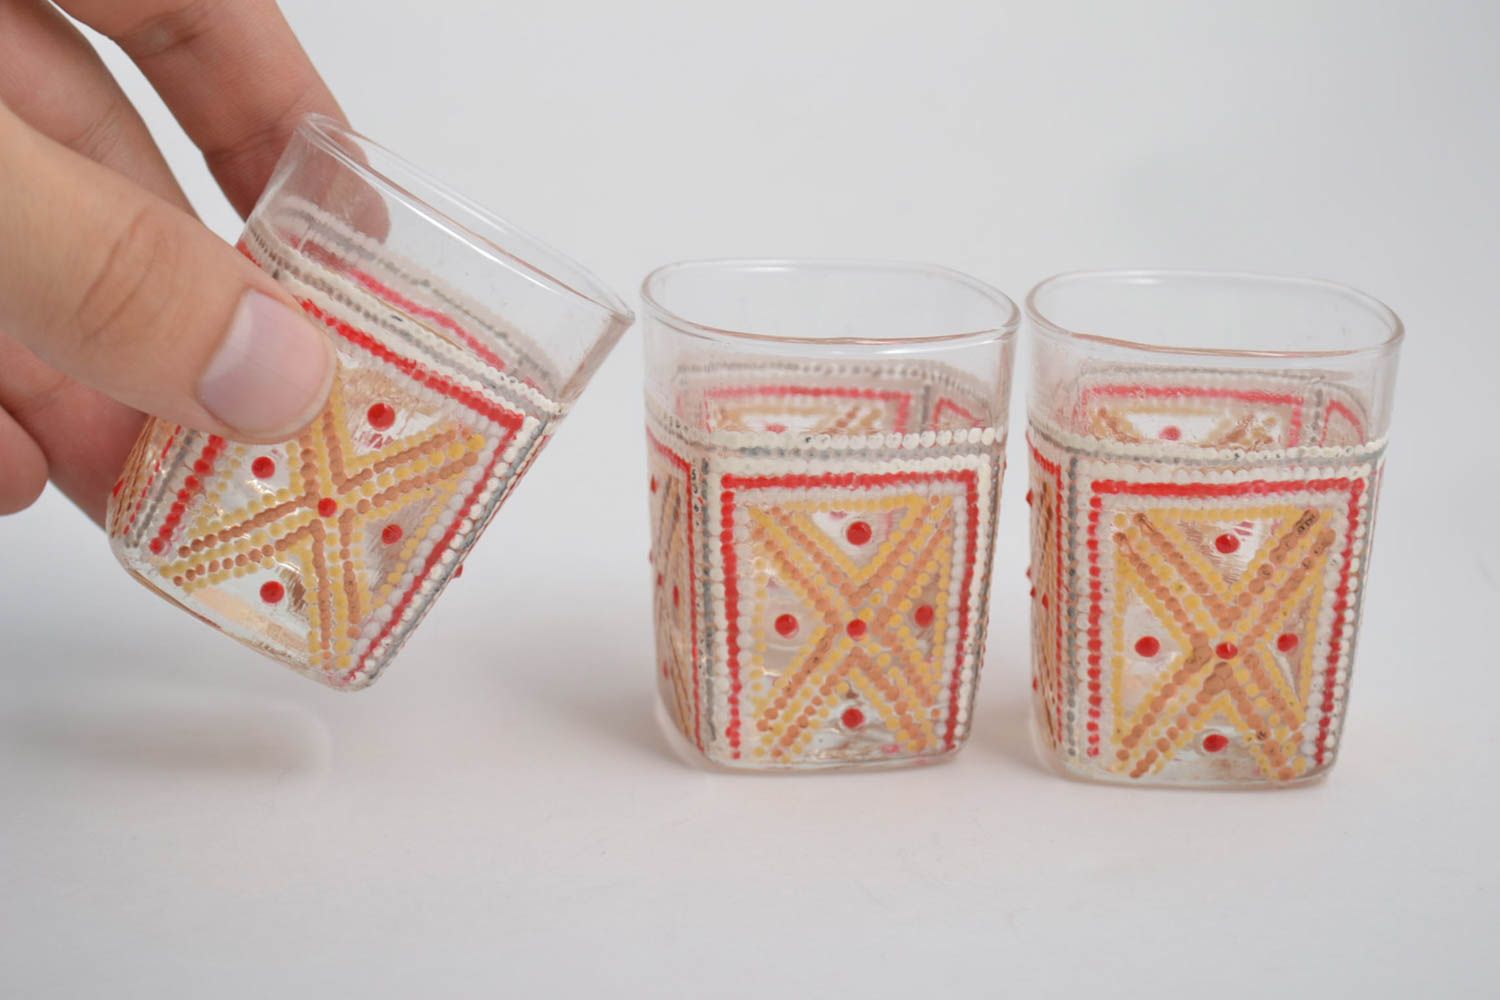 Handmade glass wine glass shot glass set of 3 items designer souvenir decor idea photo 2